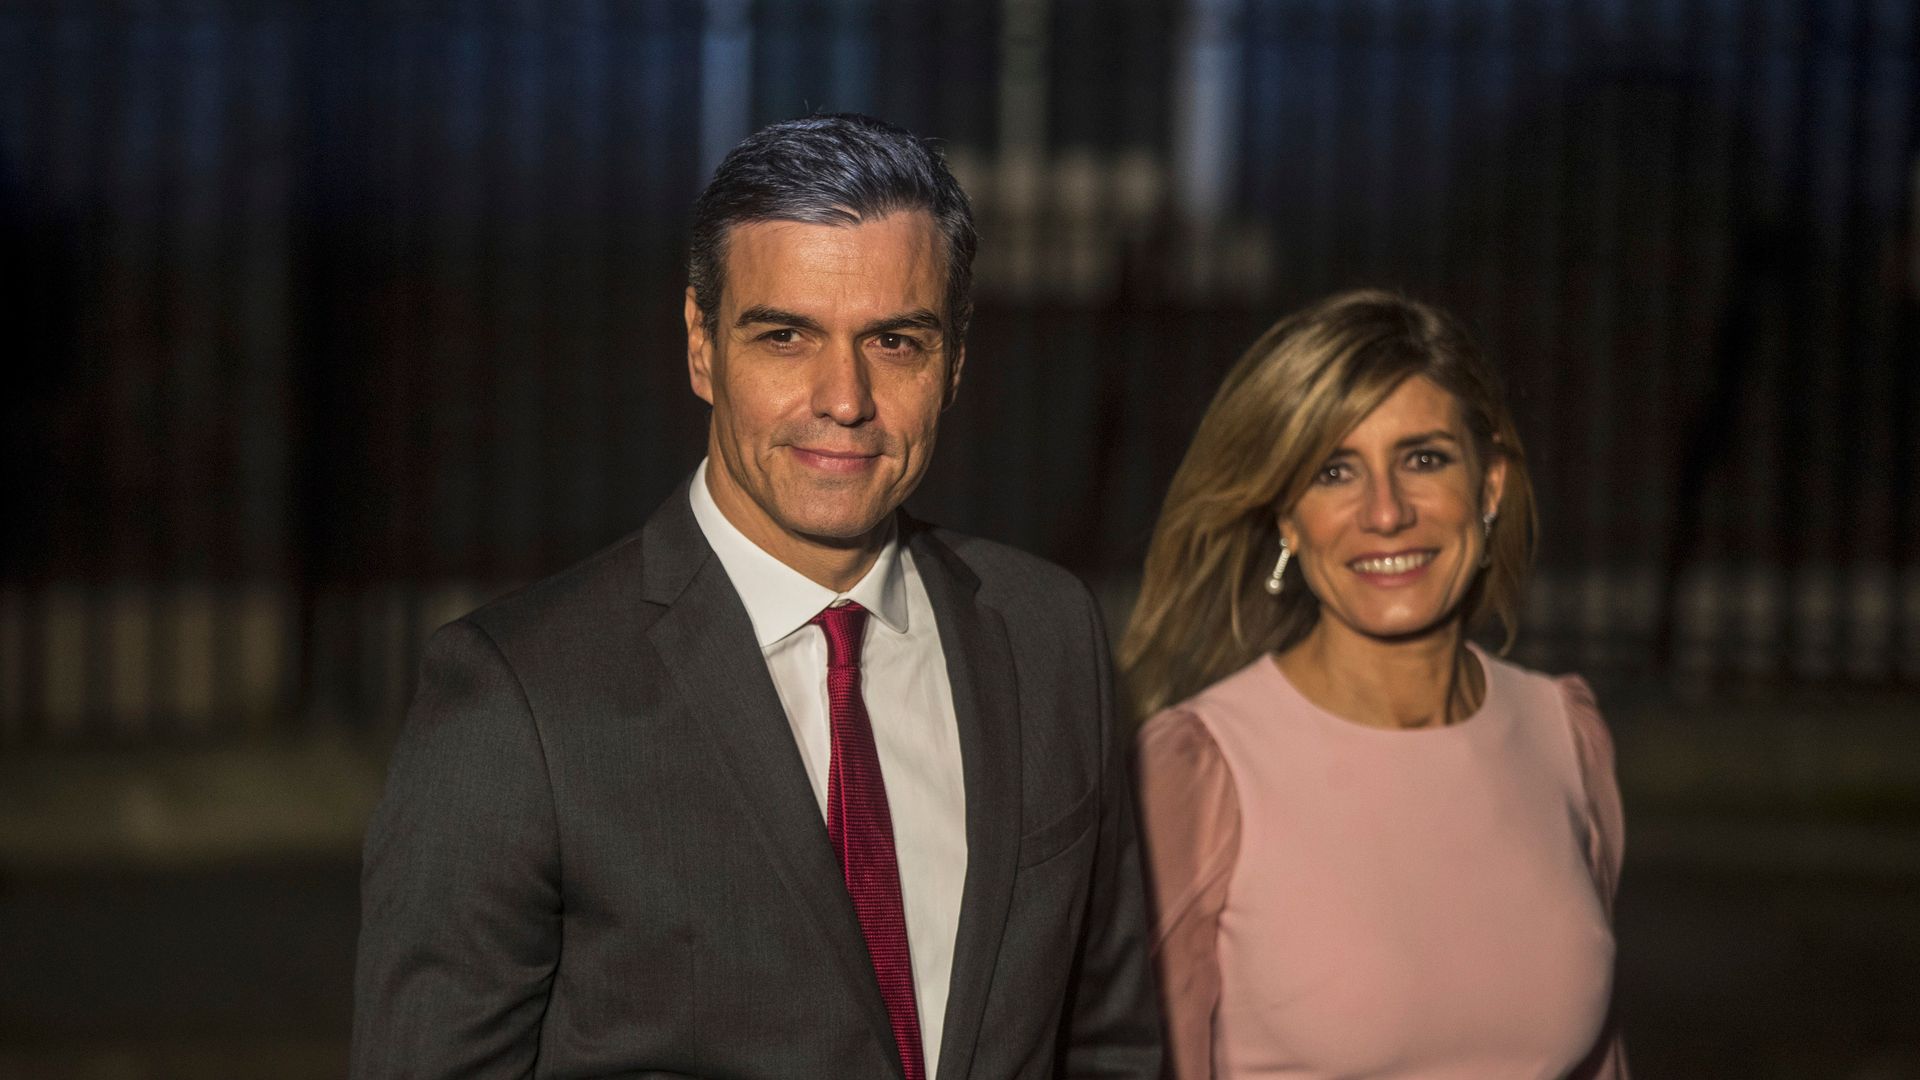 spanien: sánchez' ehefrau wusste nichts von öffentlichem brief und riet ihm vom rücktritt ab